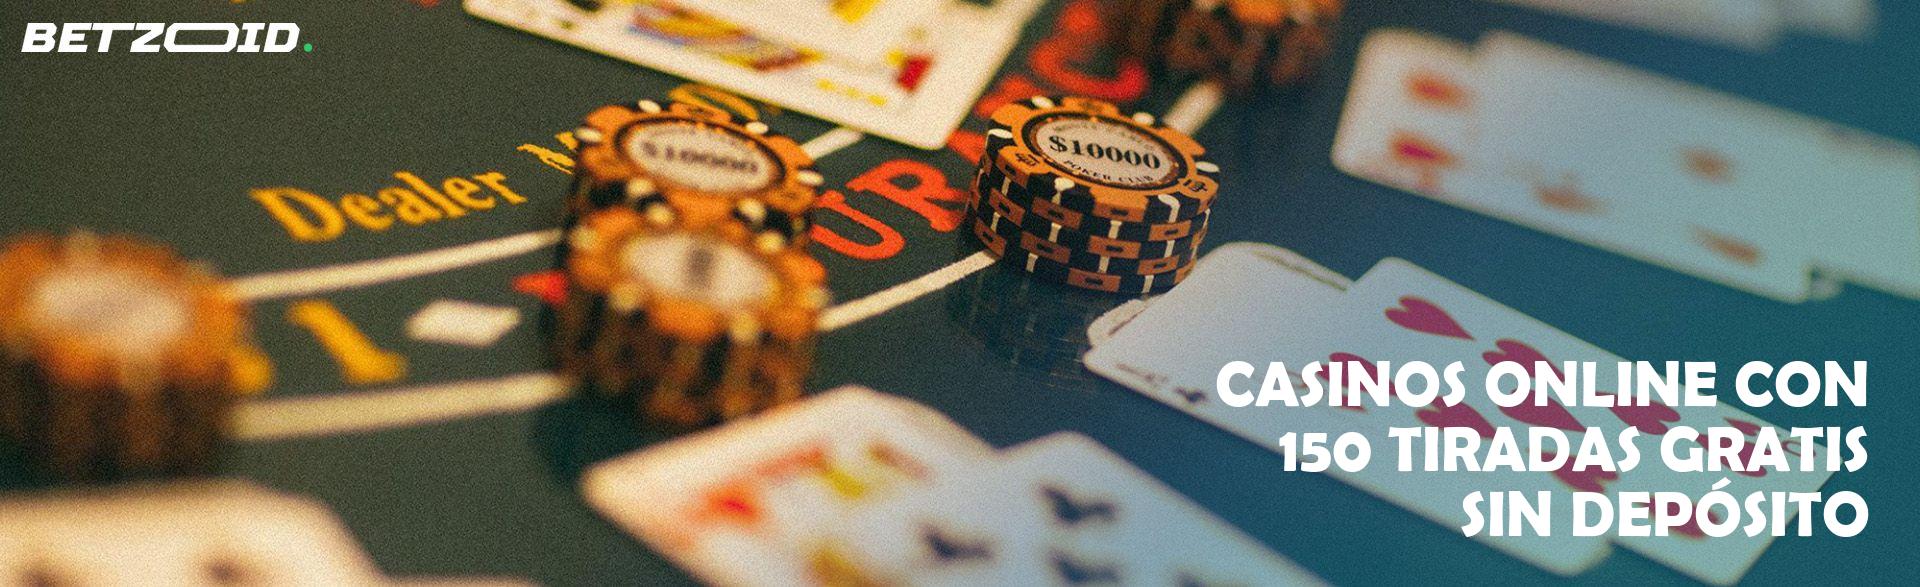 Casinos Online con 150 Tiradas Gratis sin Depósito.